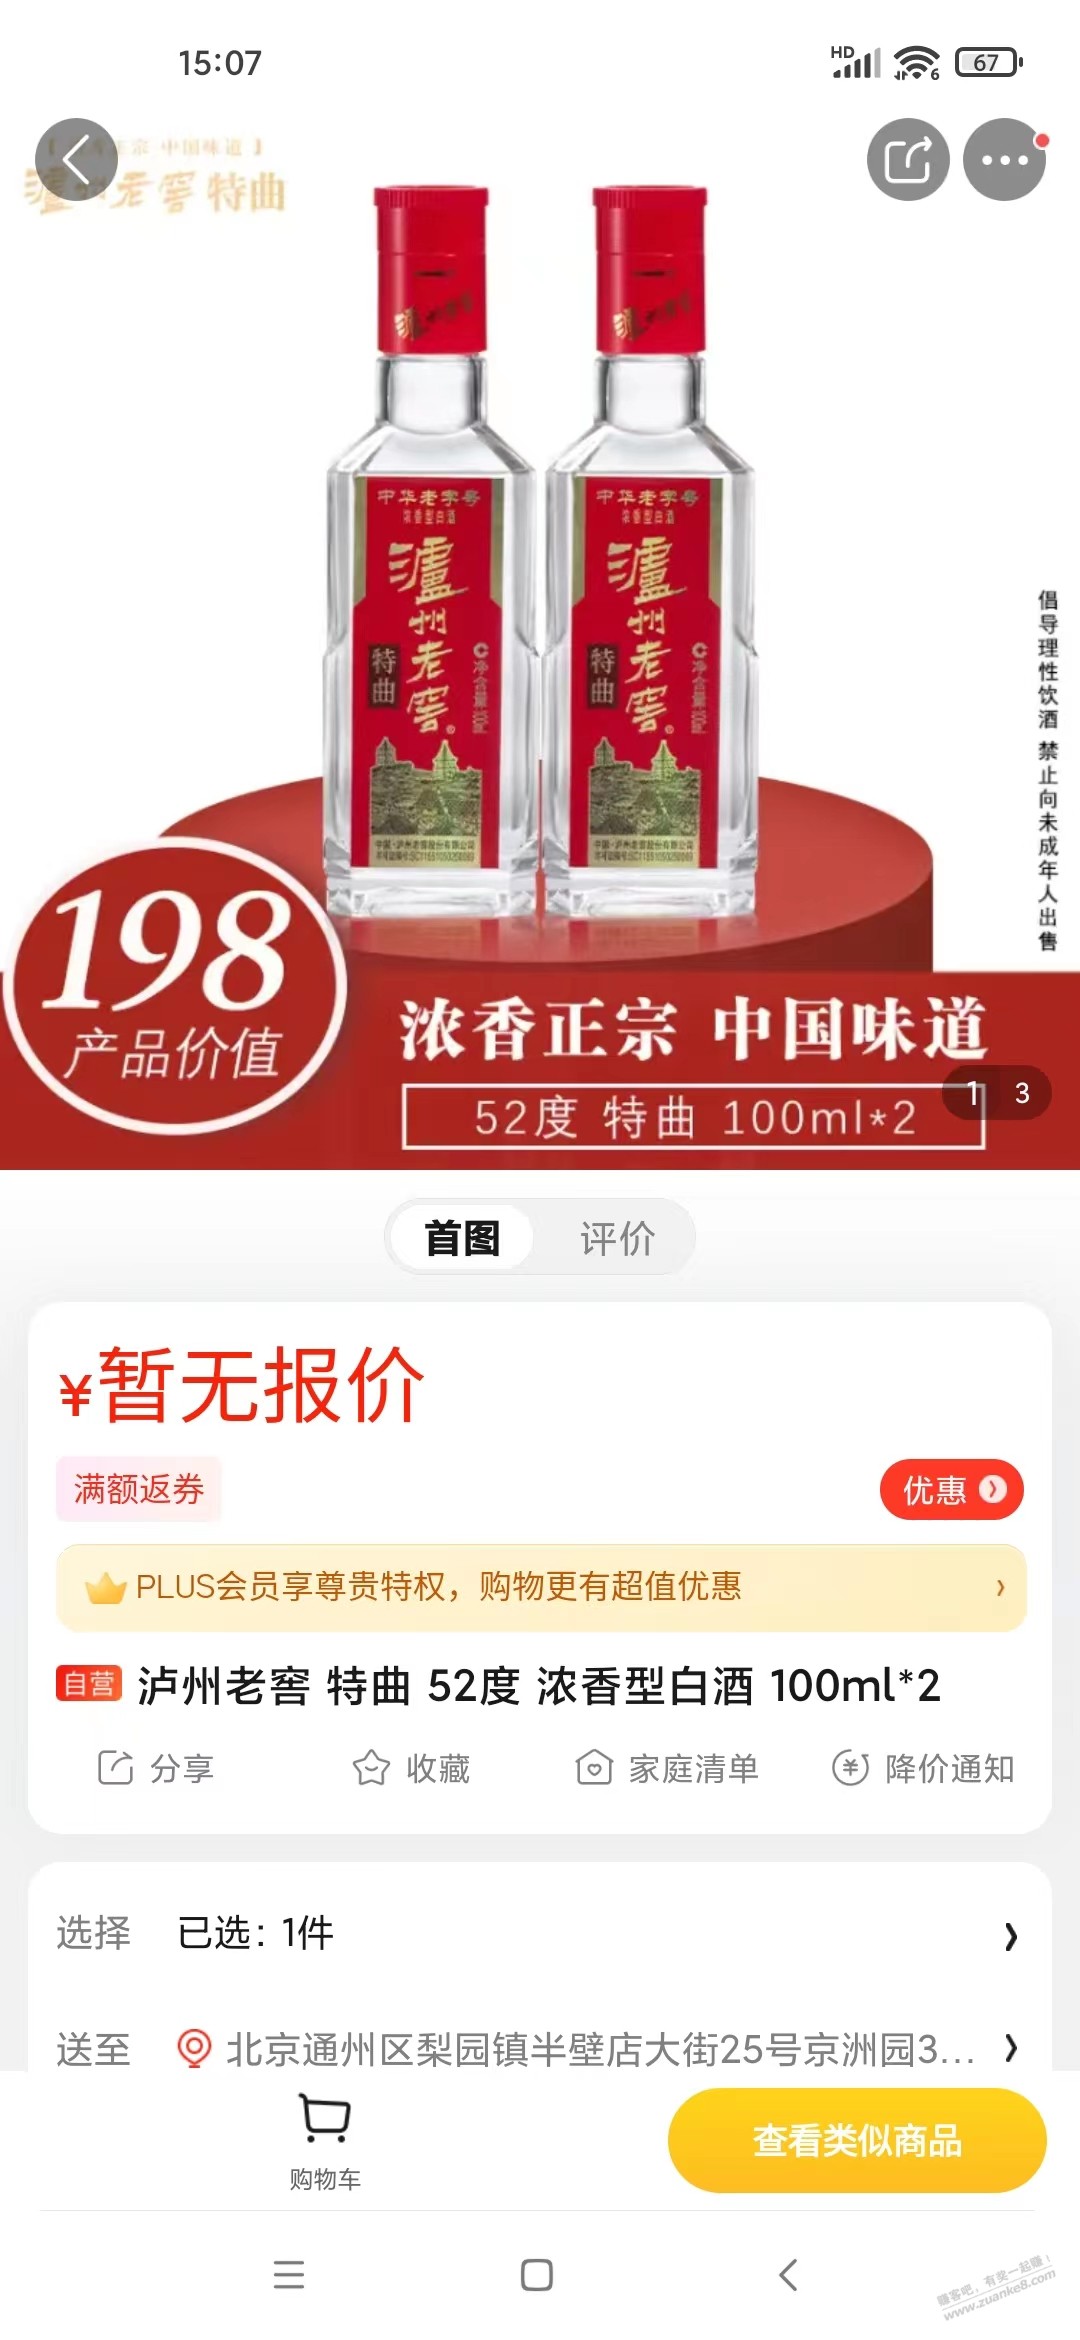 昨晚京东买了包太阳锅巴-送了两瓶100ml泸州老窖-惠小助(52huixz.com)